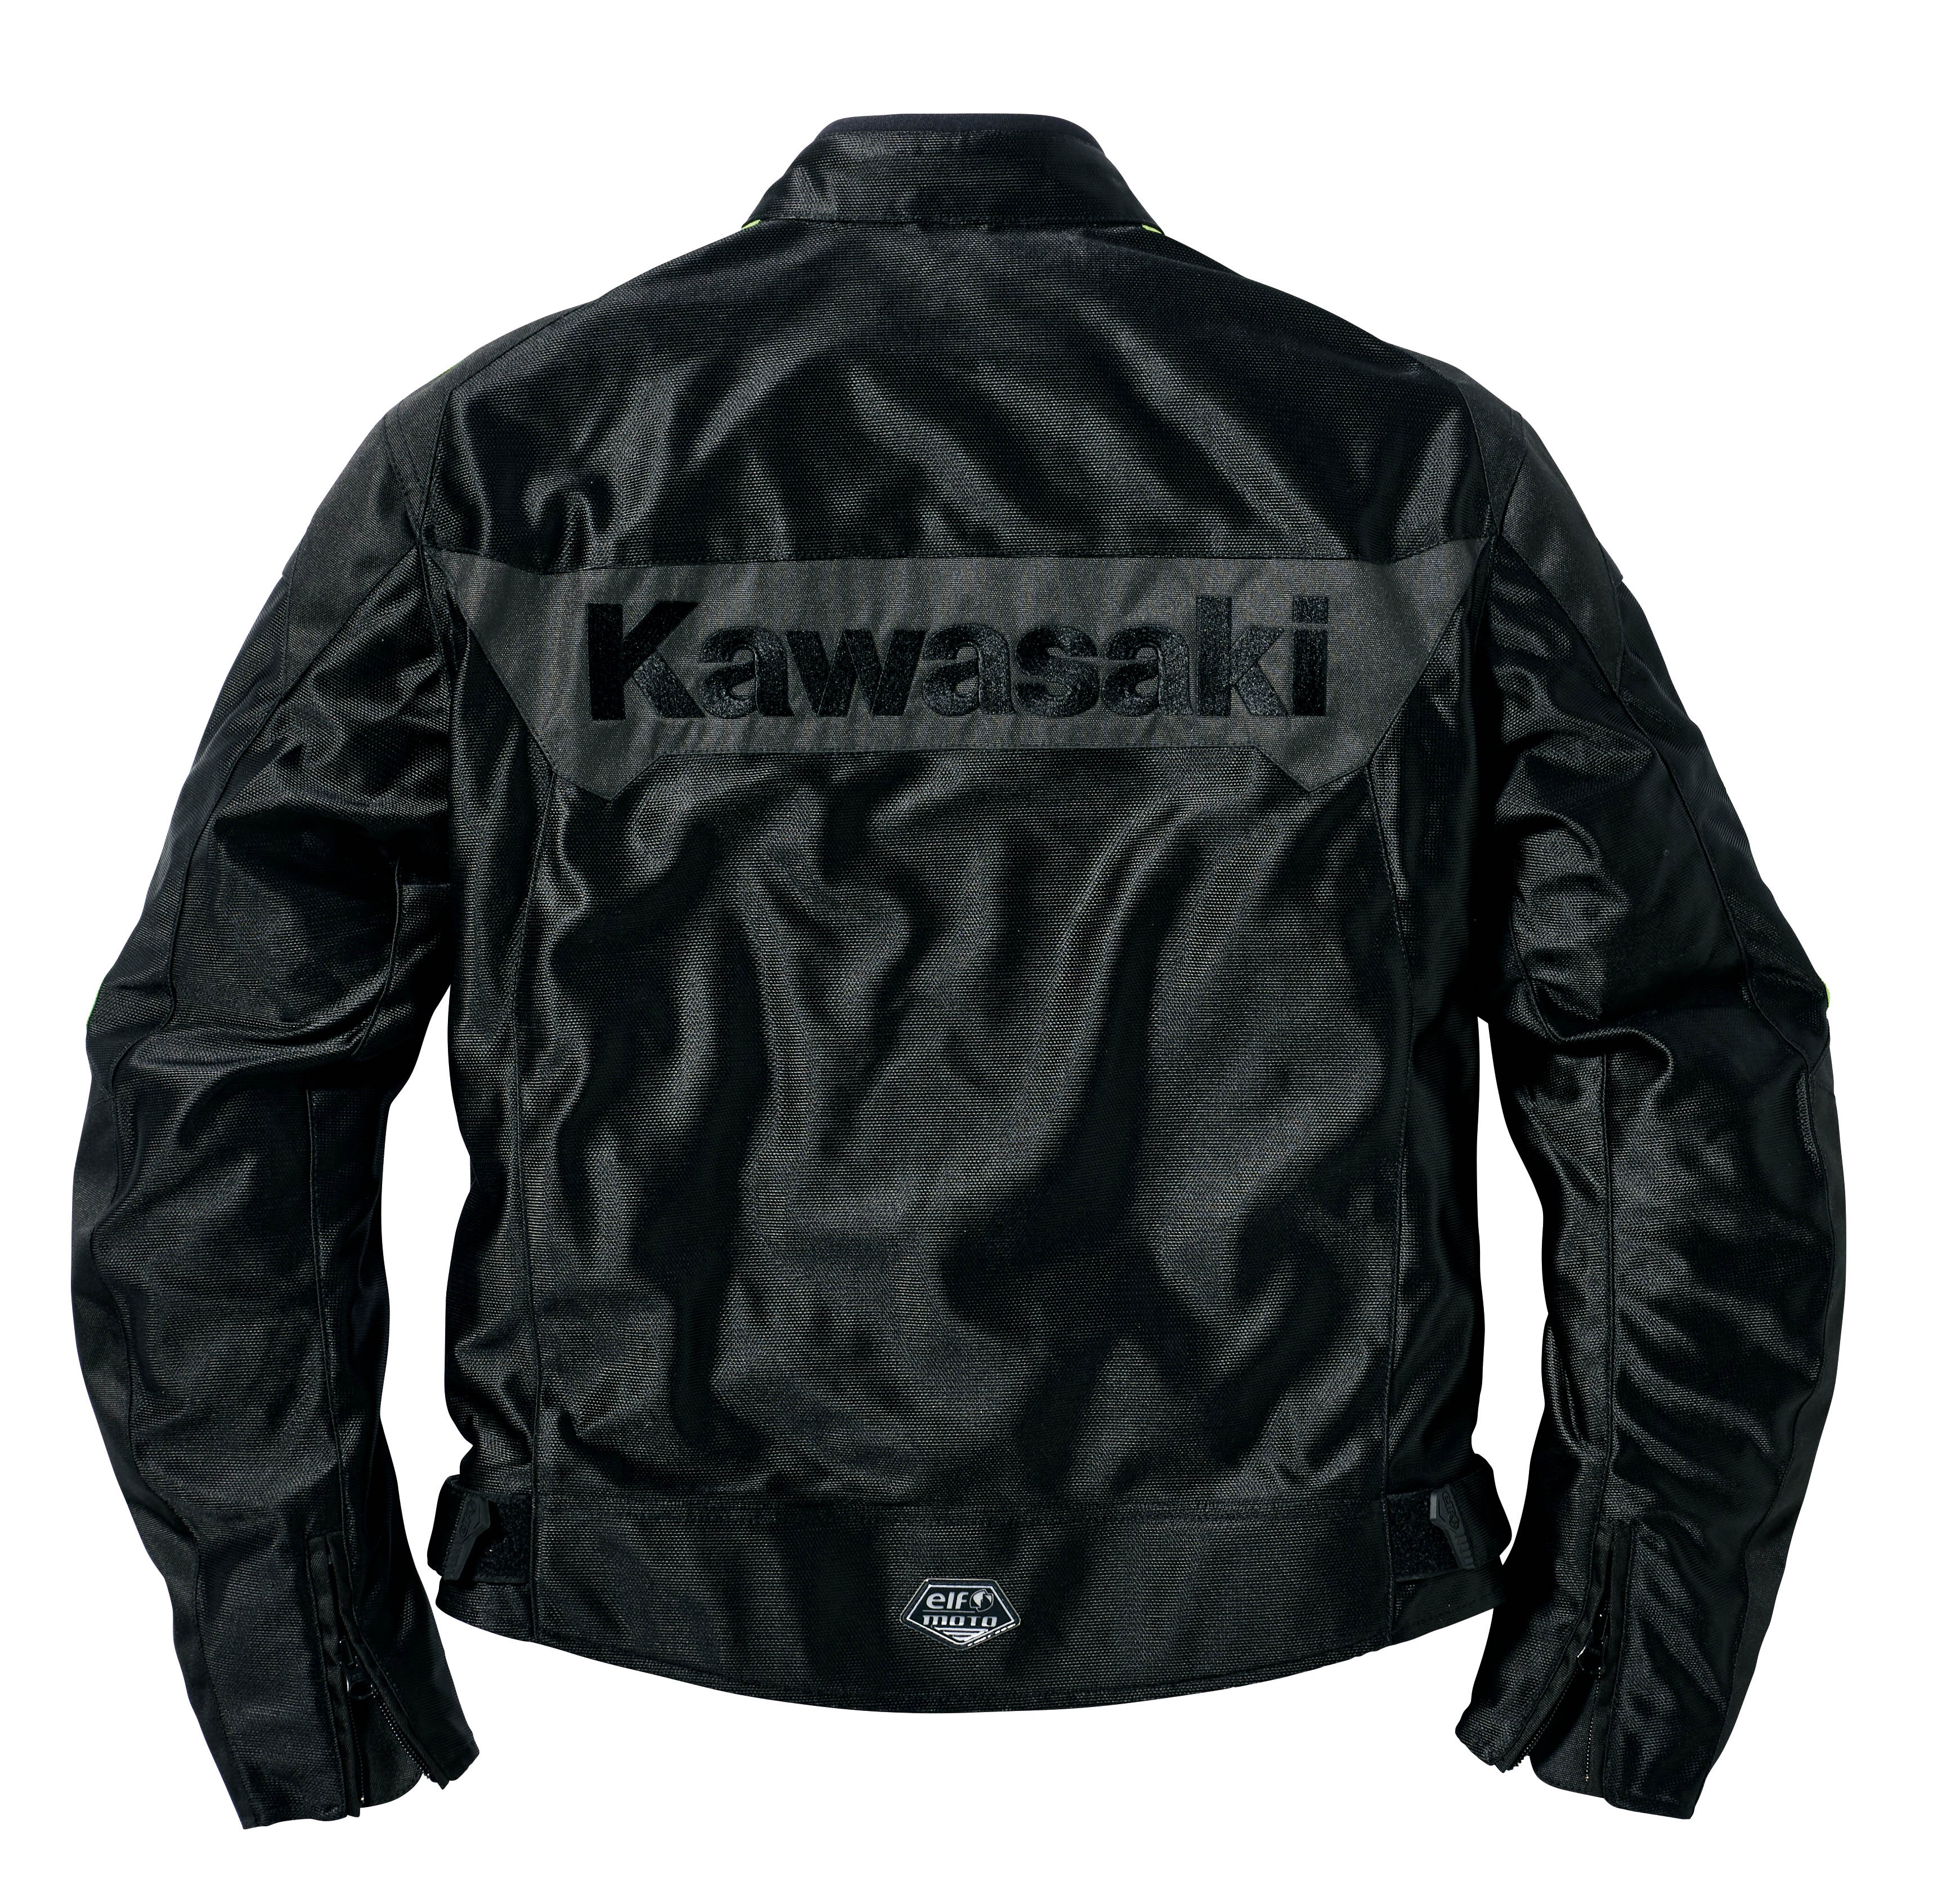 Kawasaki(カワサキ)プロテクター入りメッシュジャケット